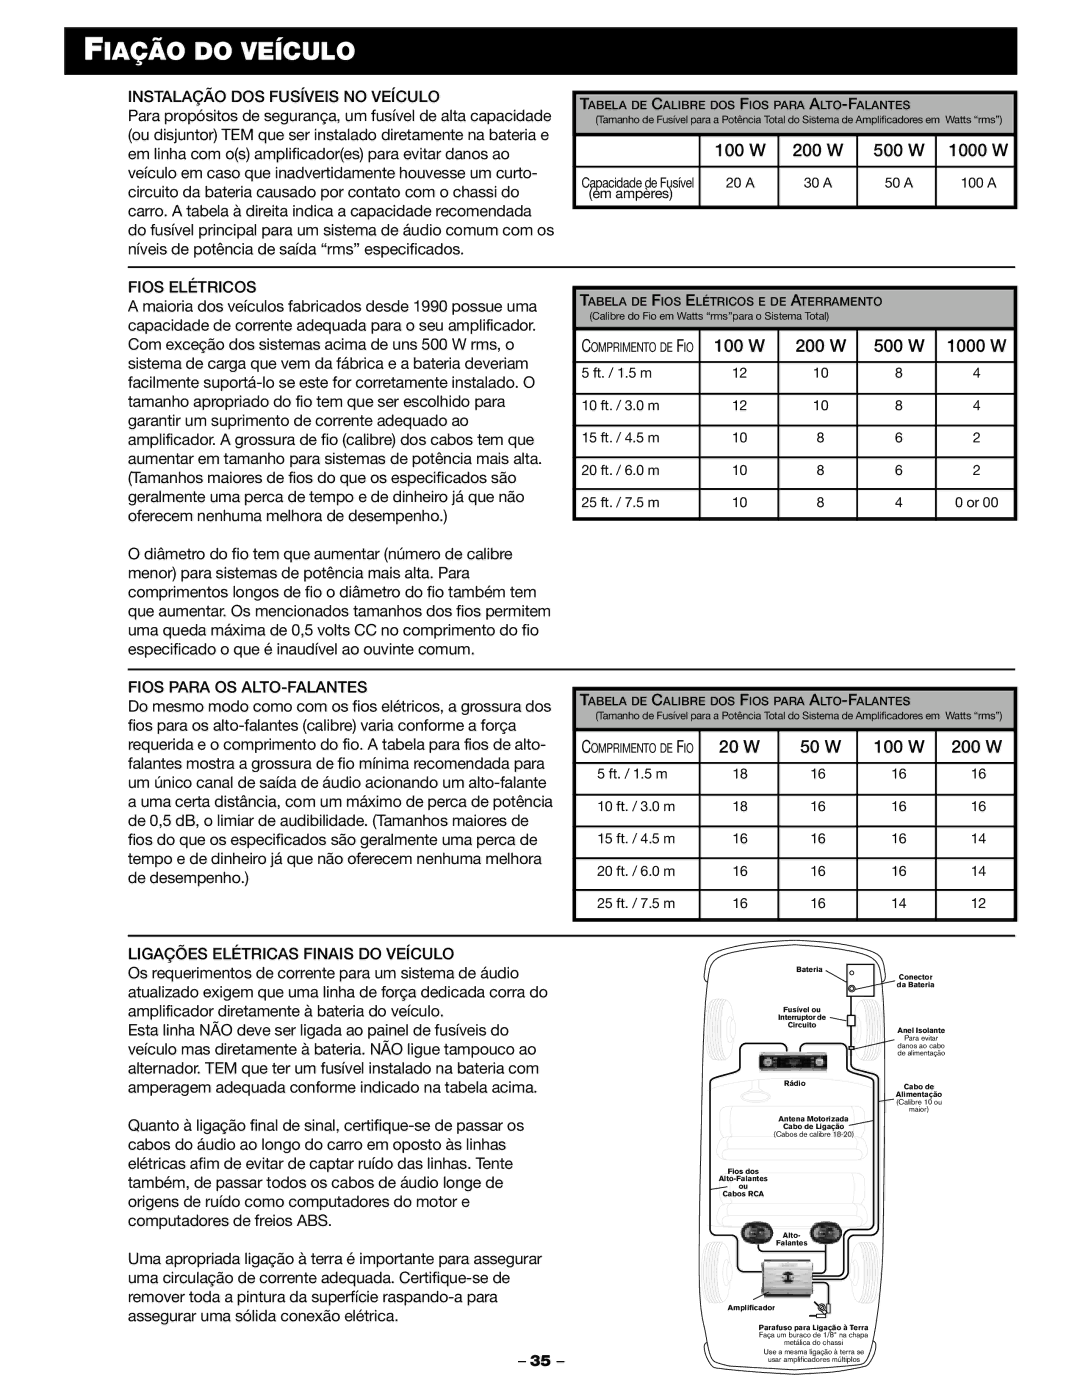 Blaupunkt PCA 250 manual Fiação do Veículo, Instalação DOS Fusíveis no Veículo, Fios Elétricos, Fios Para OS ALTO-FALANTES 